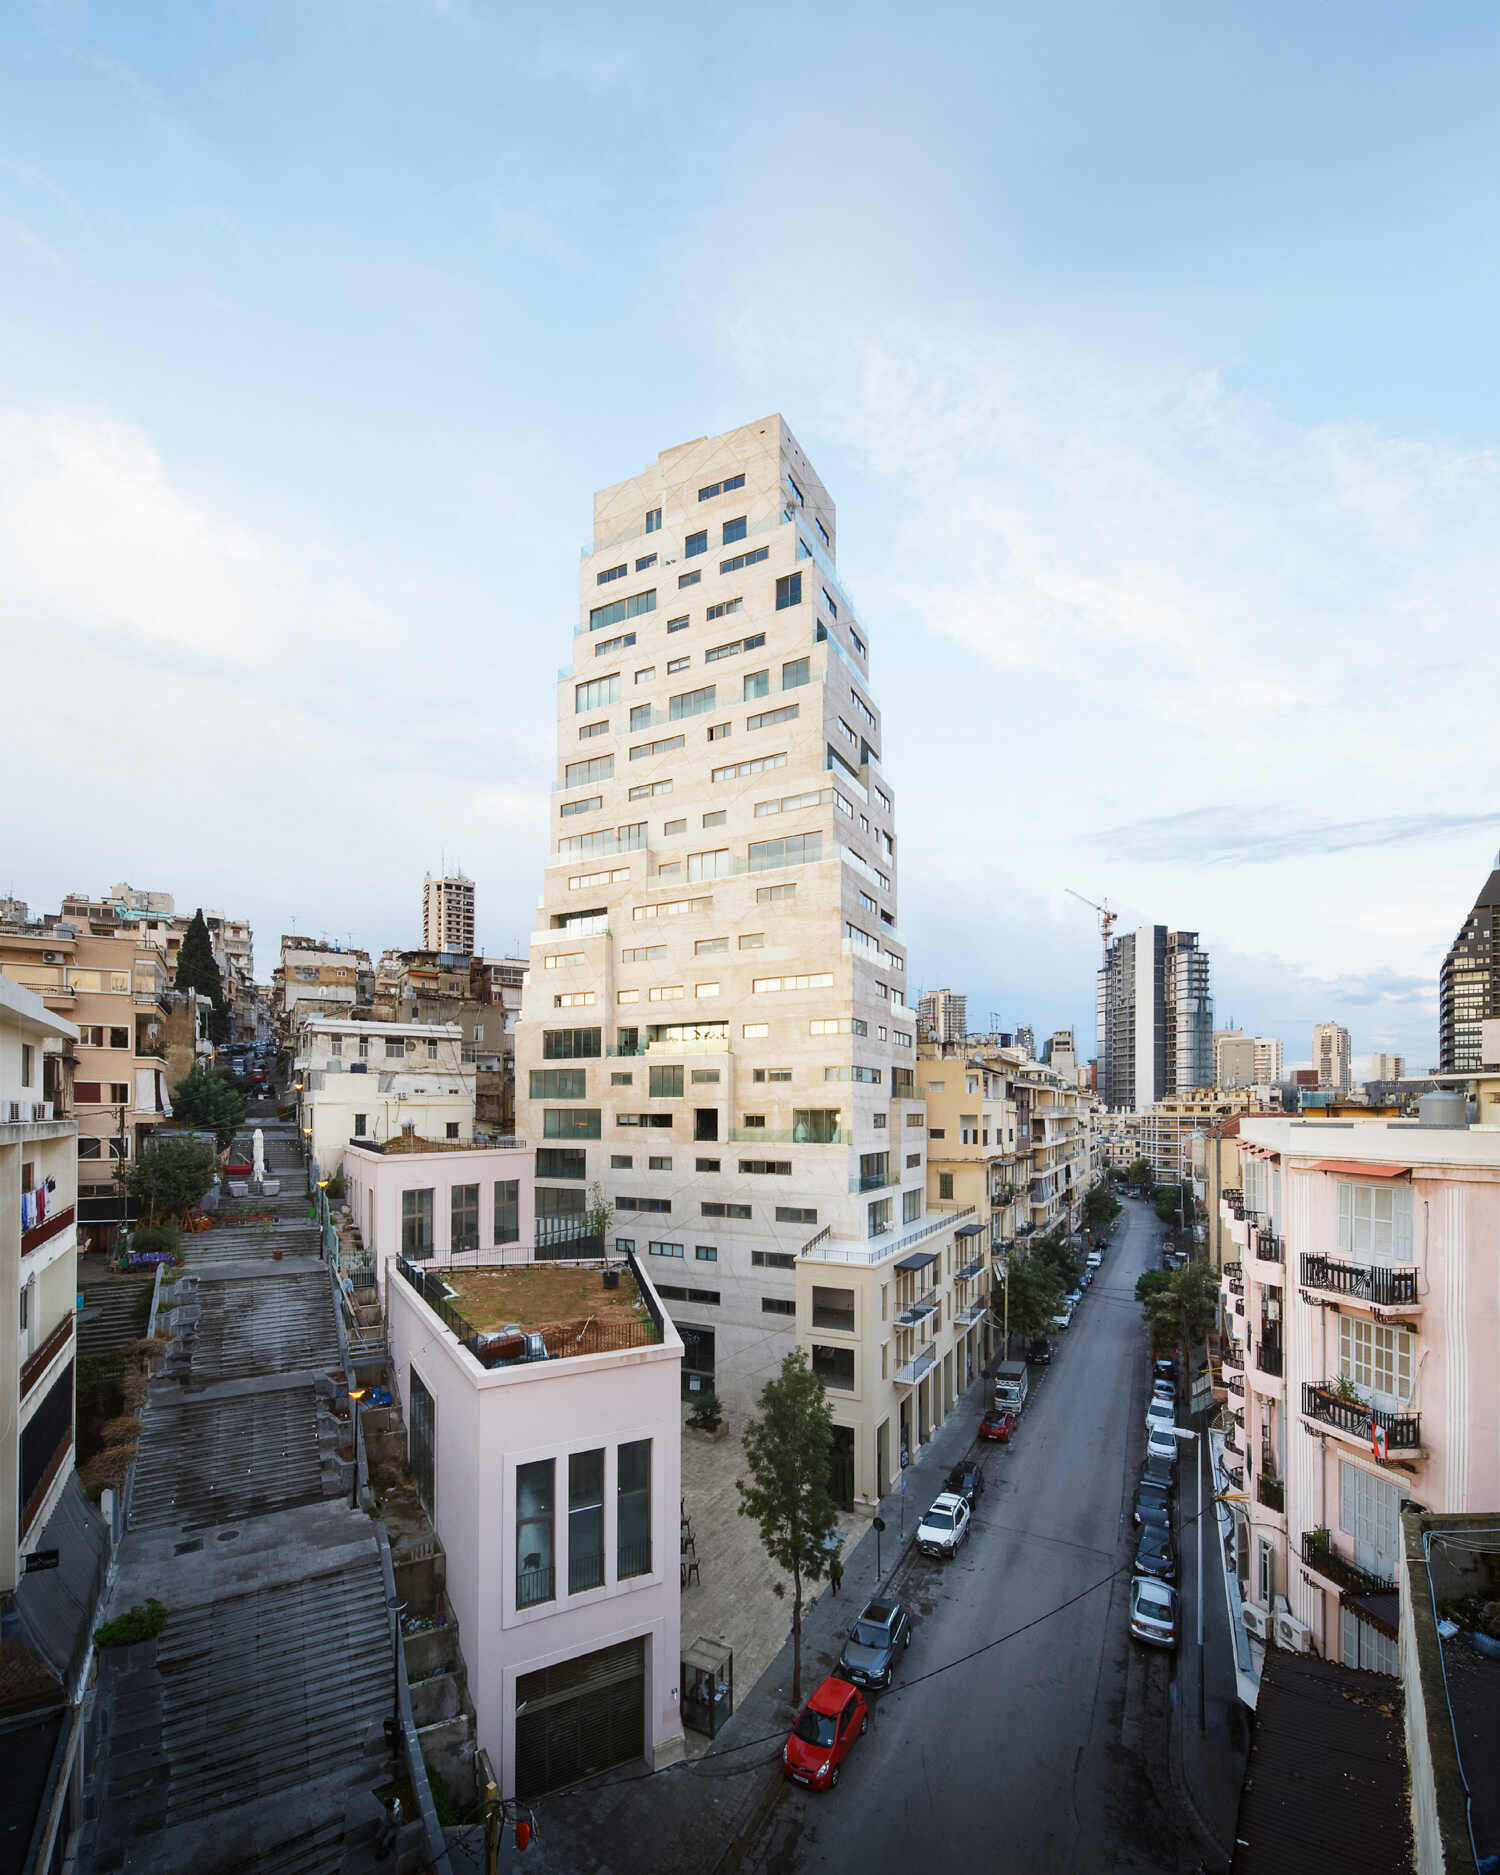 מגזין מקו ועד תרבות / מיזם דיגיטלי ללא צרכי רווח בירות<br><br>מגדל AYA ברובע Mar Michael<br><br>שכנים. מעבר לגדר. פרויקט ייחודי בבירות, לבנון, בעת קרה אסון הפיצוץ האחרון ב-2020 בנמל בירות.  